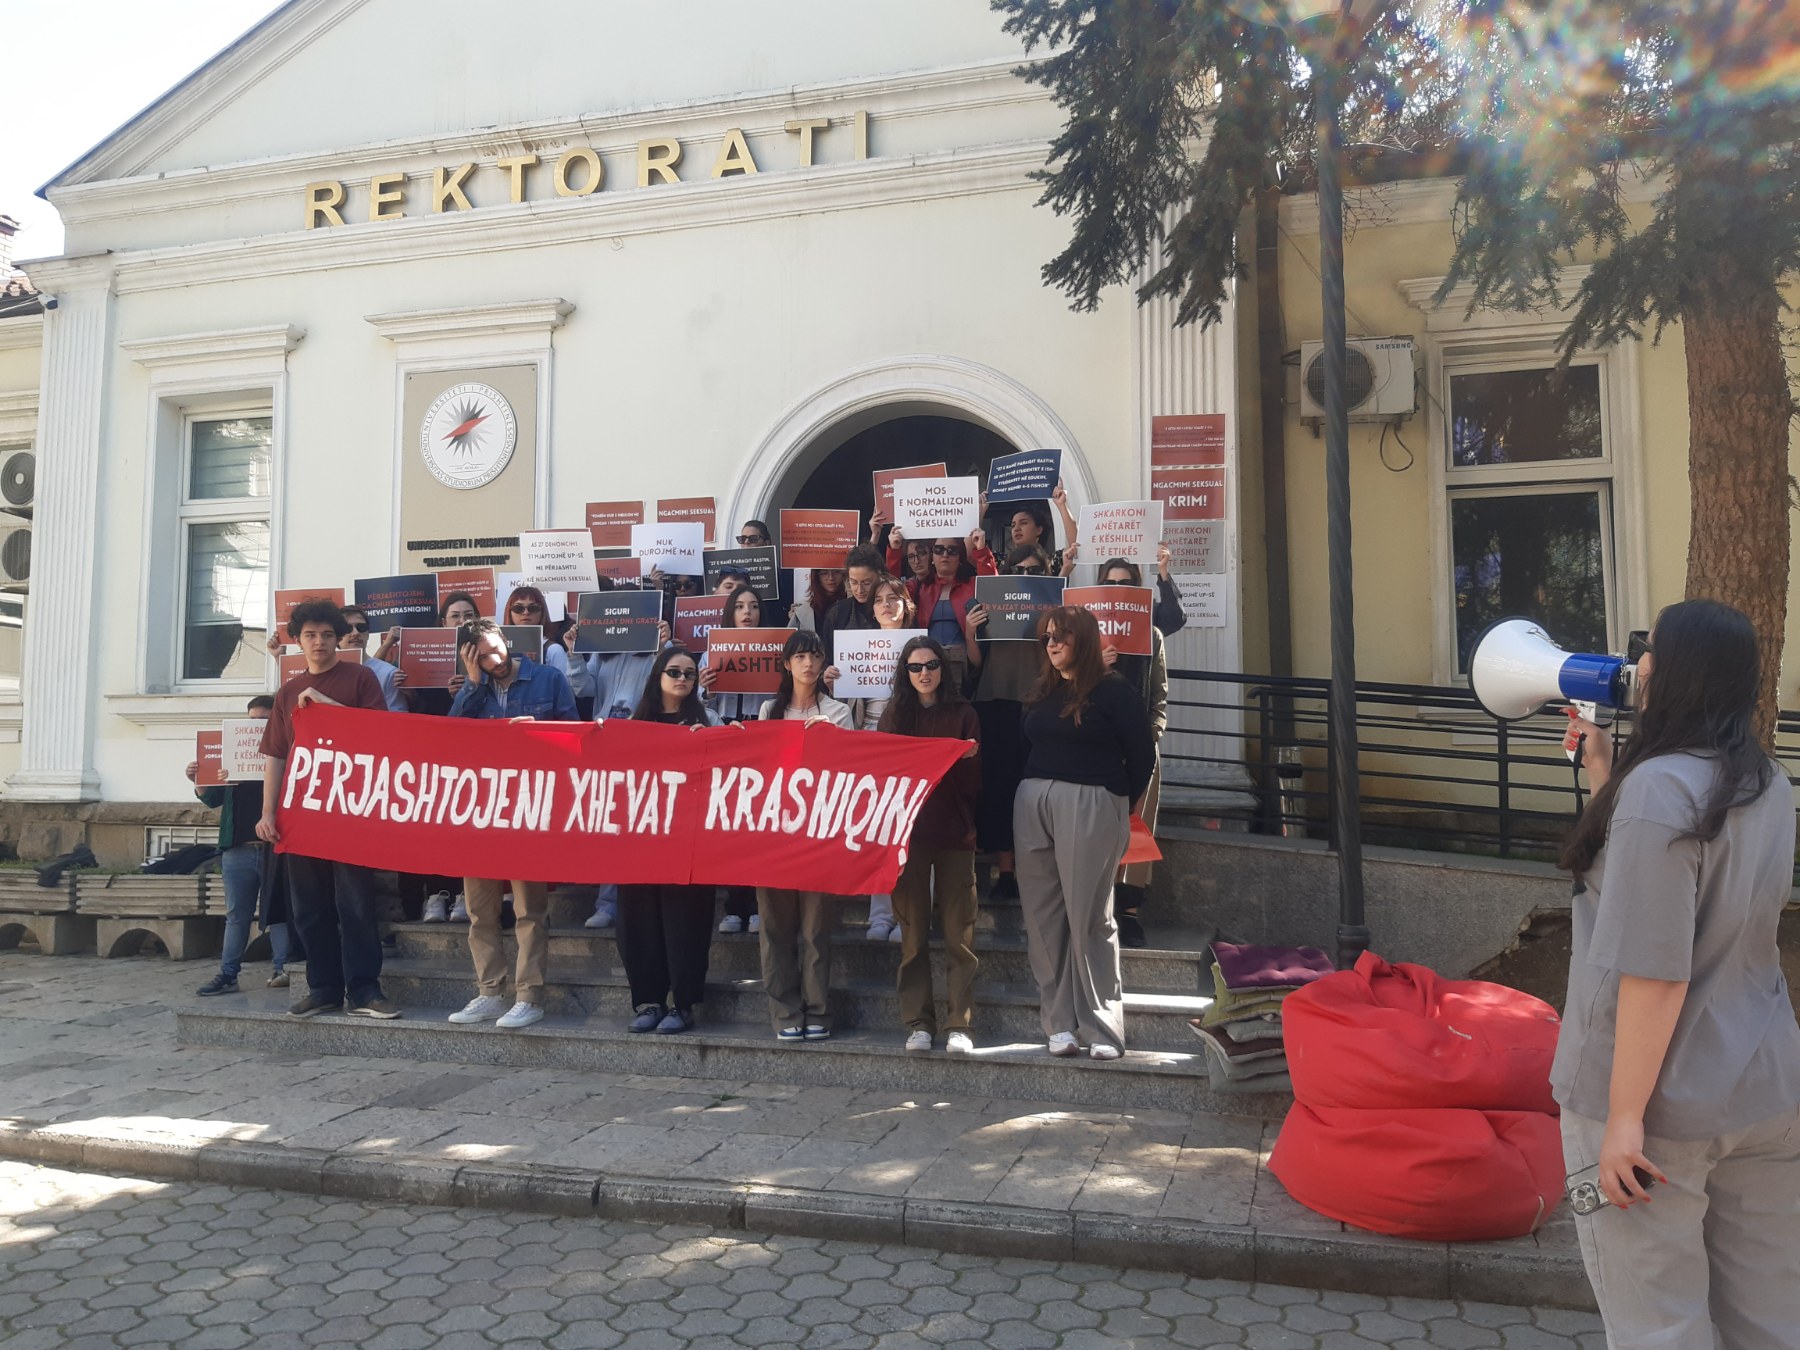 Lëvizja Feministe Studentore proteston me kërkesën për largimin e profesorit Xhevat Krasniqi, i denoncuar për ngacmim seksual të studenteve. Foto: Veronë Zymberi/ KALLXO.com